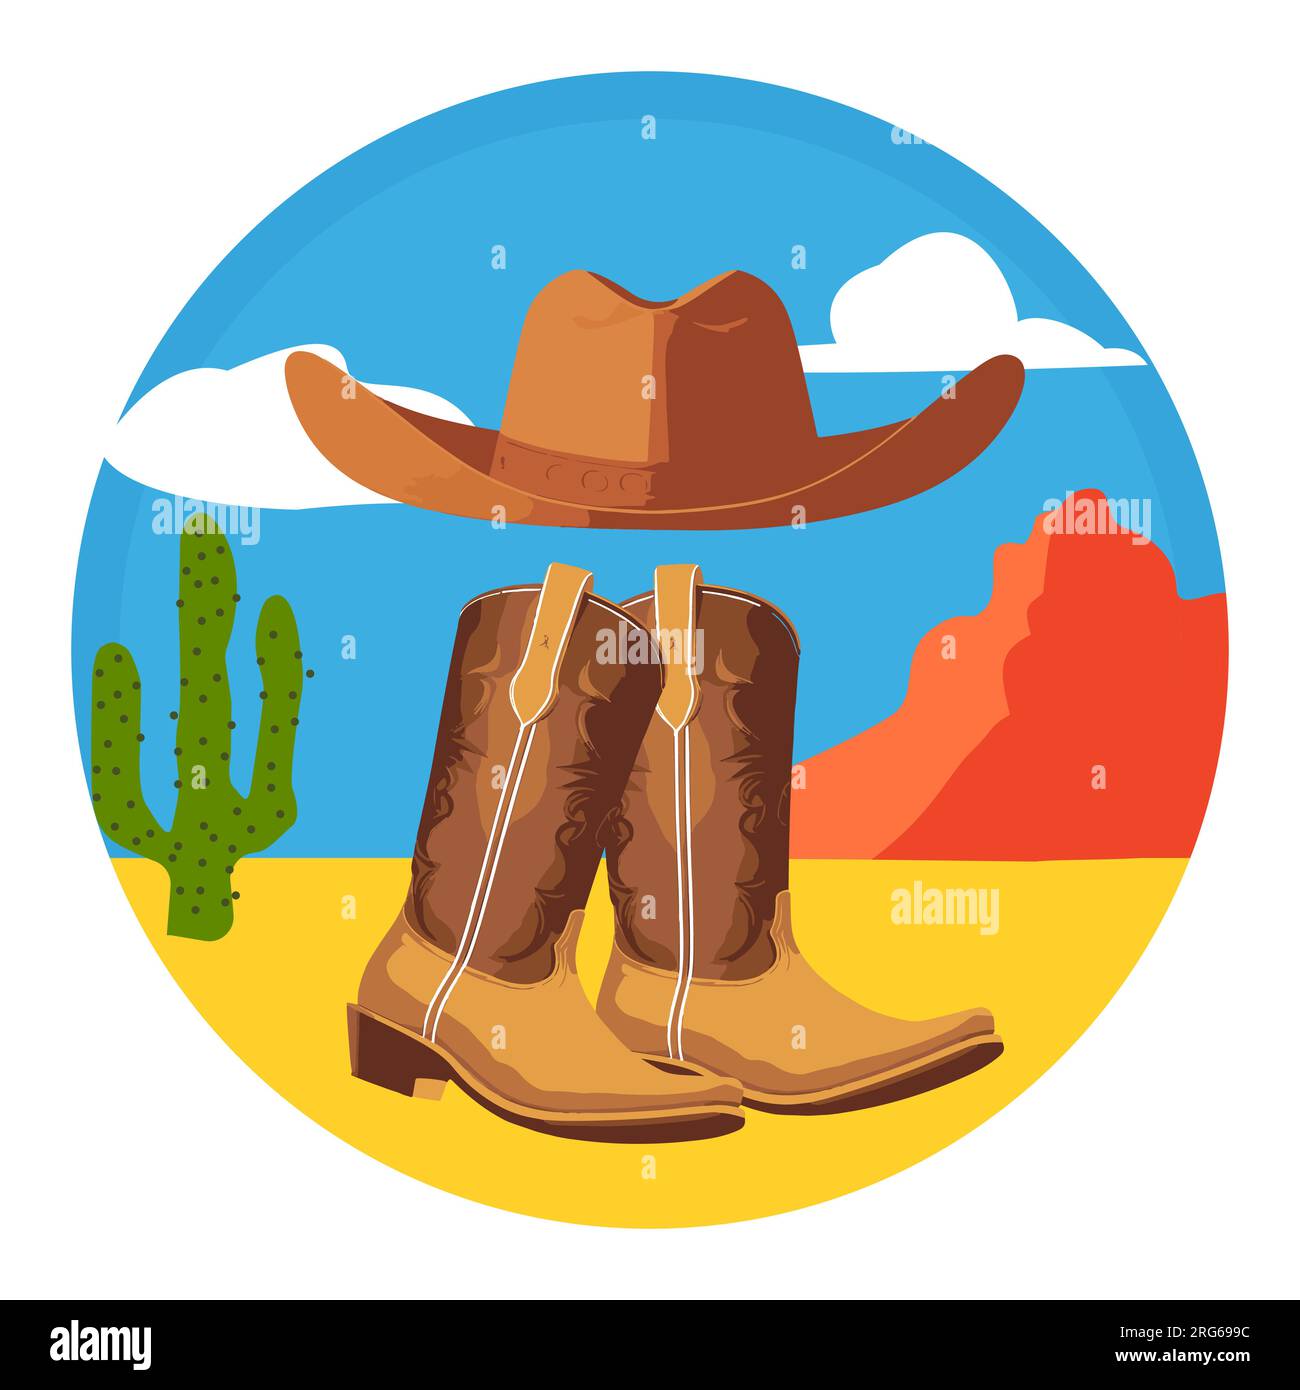 Rodeo. Stivali e cappello da cowboy americani in un paesaggio desertico dell'Arizona occidentale. Concetto del selvaggio West. Stampa da cowboy vintage. Vettore isolato. Illustrazione Vettoriale